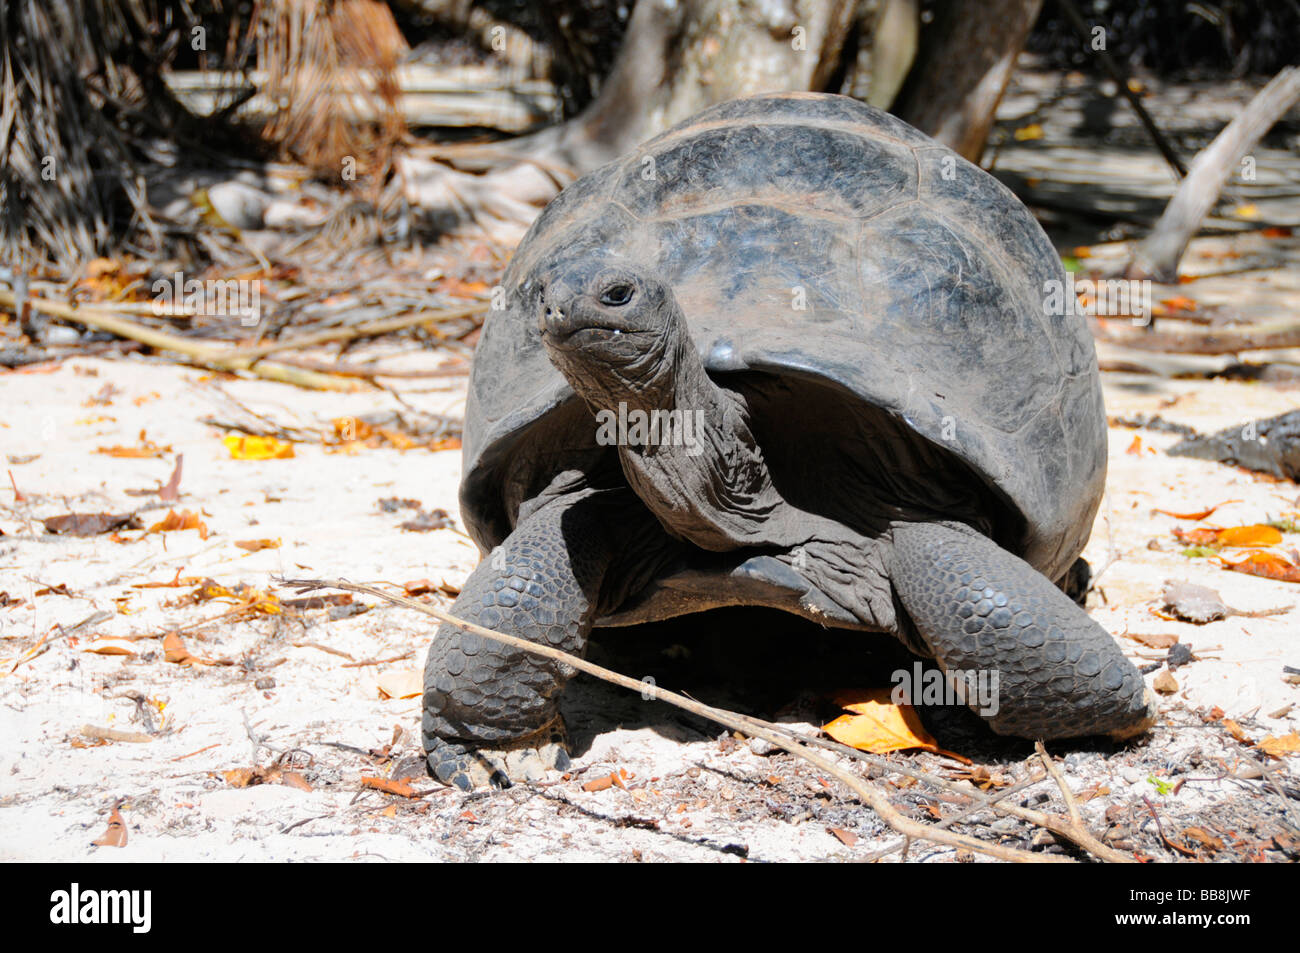 Tortue géante d'Aldabra (Aldabrachelys gigantea), l'île Curieuse, Seychelles Banque D'Images